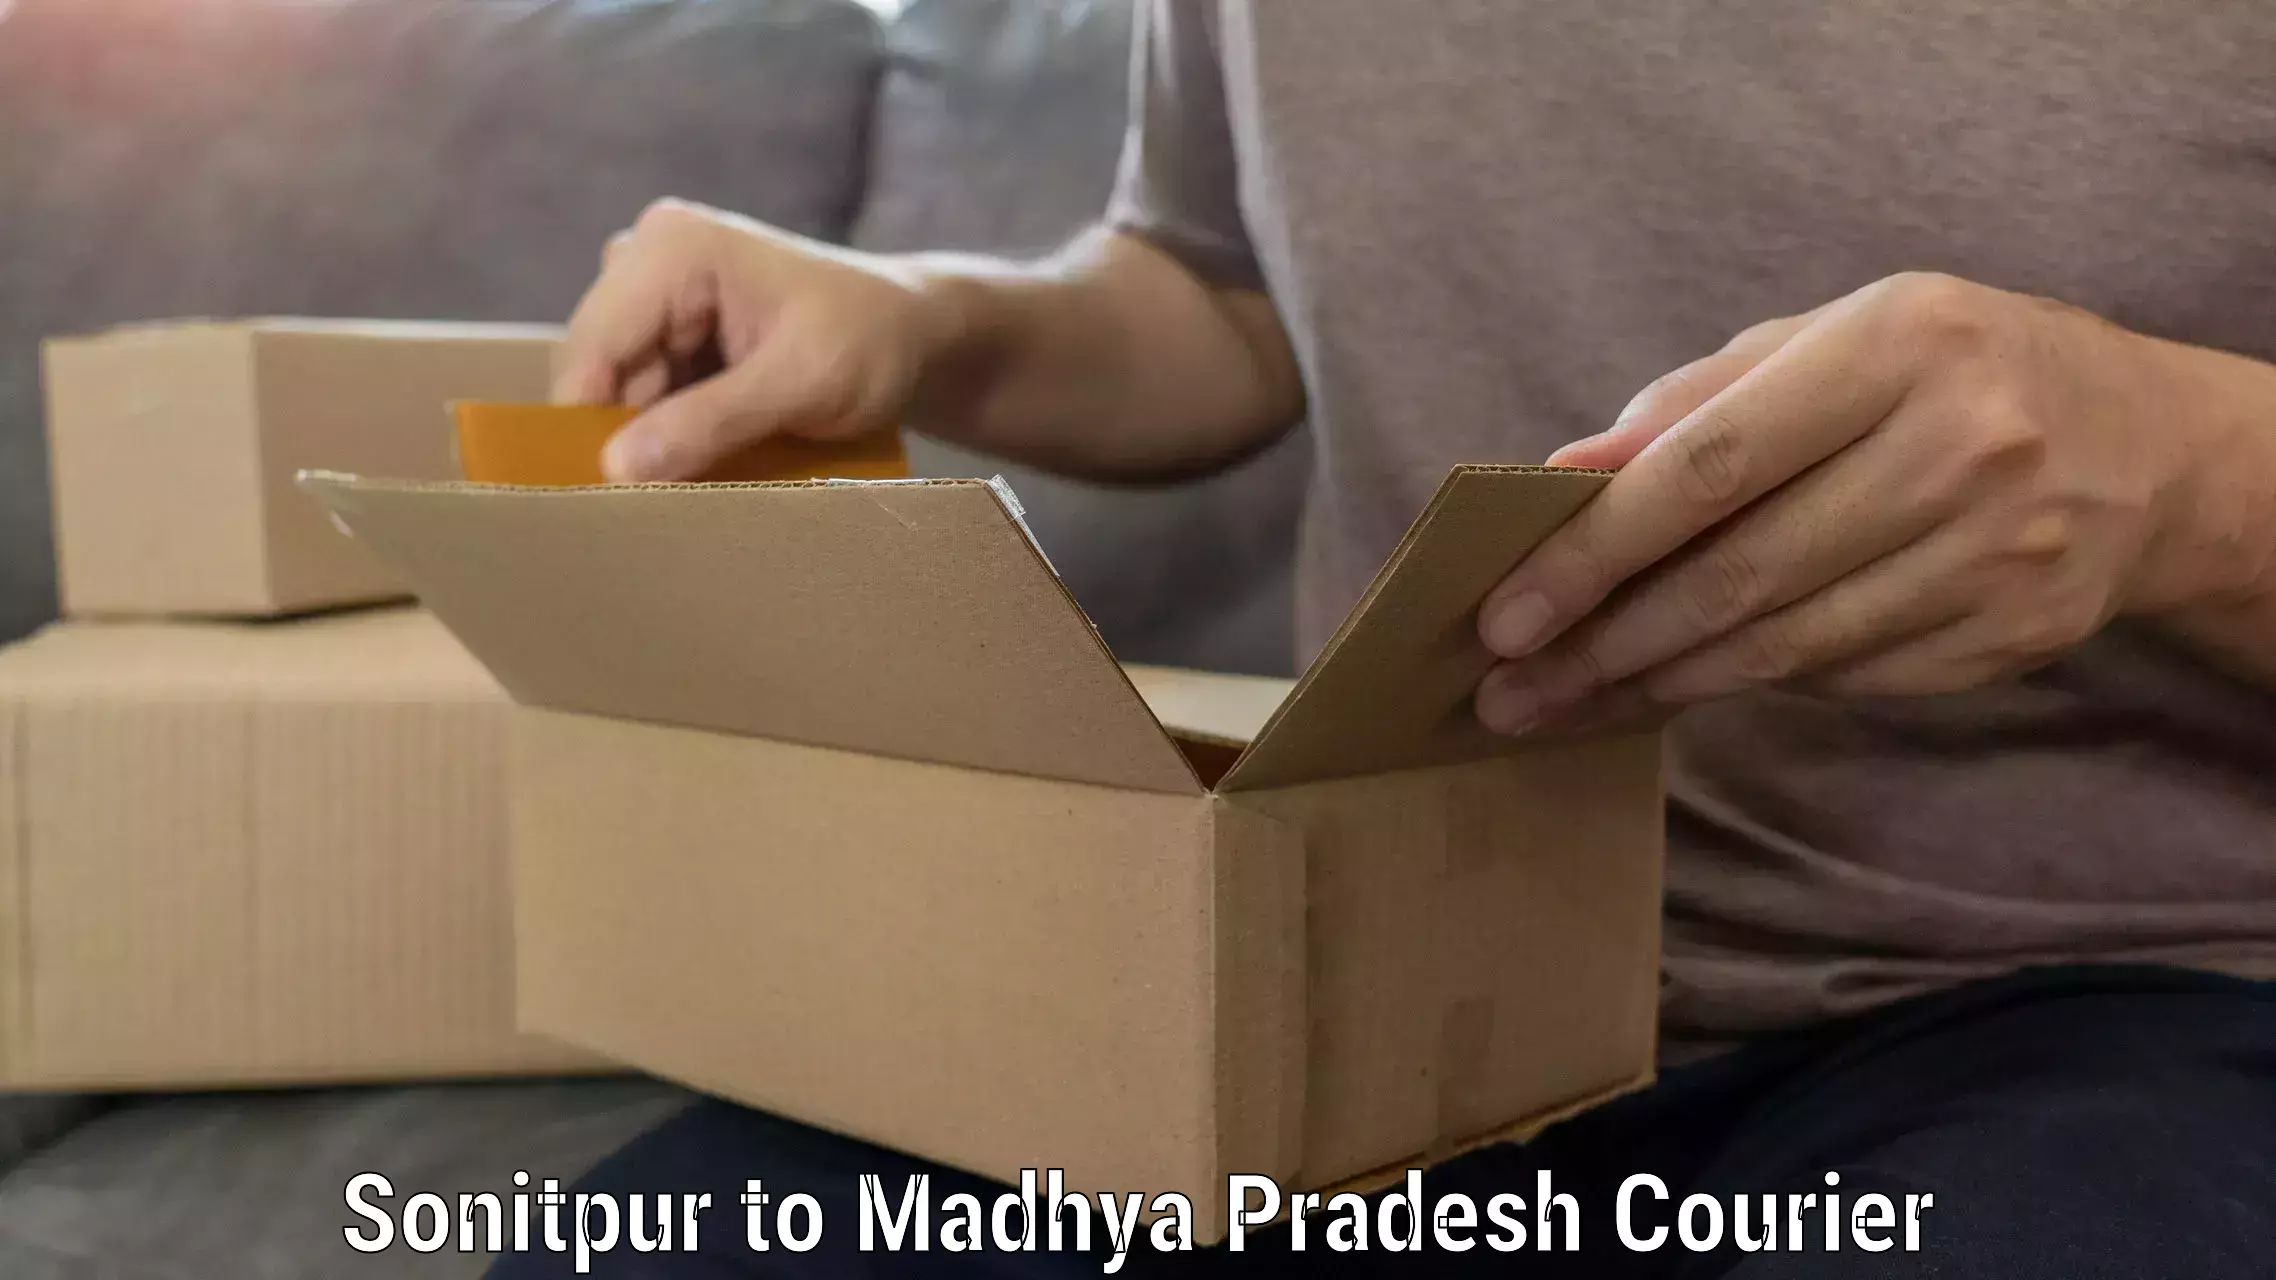 Home shifting experts Sonitpur to Madhya Pradesh